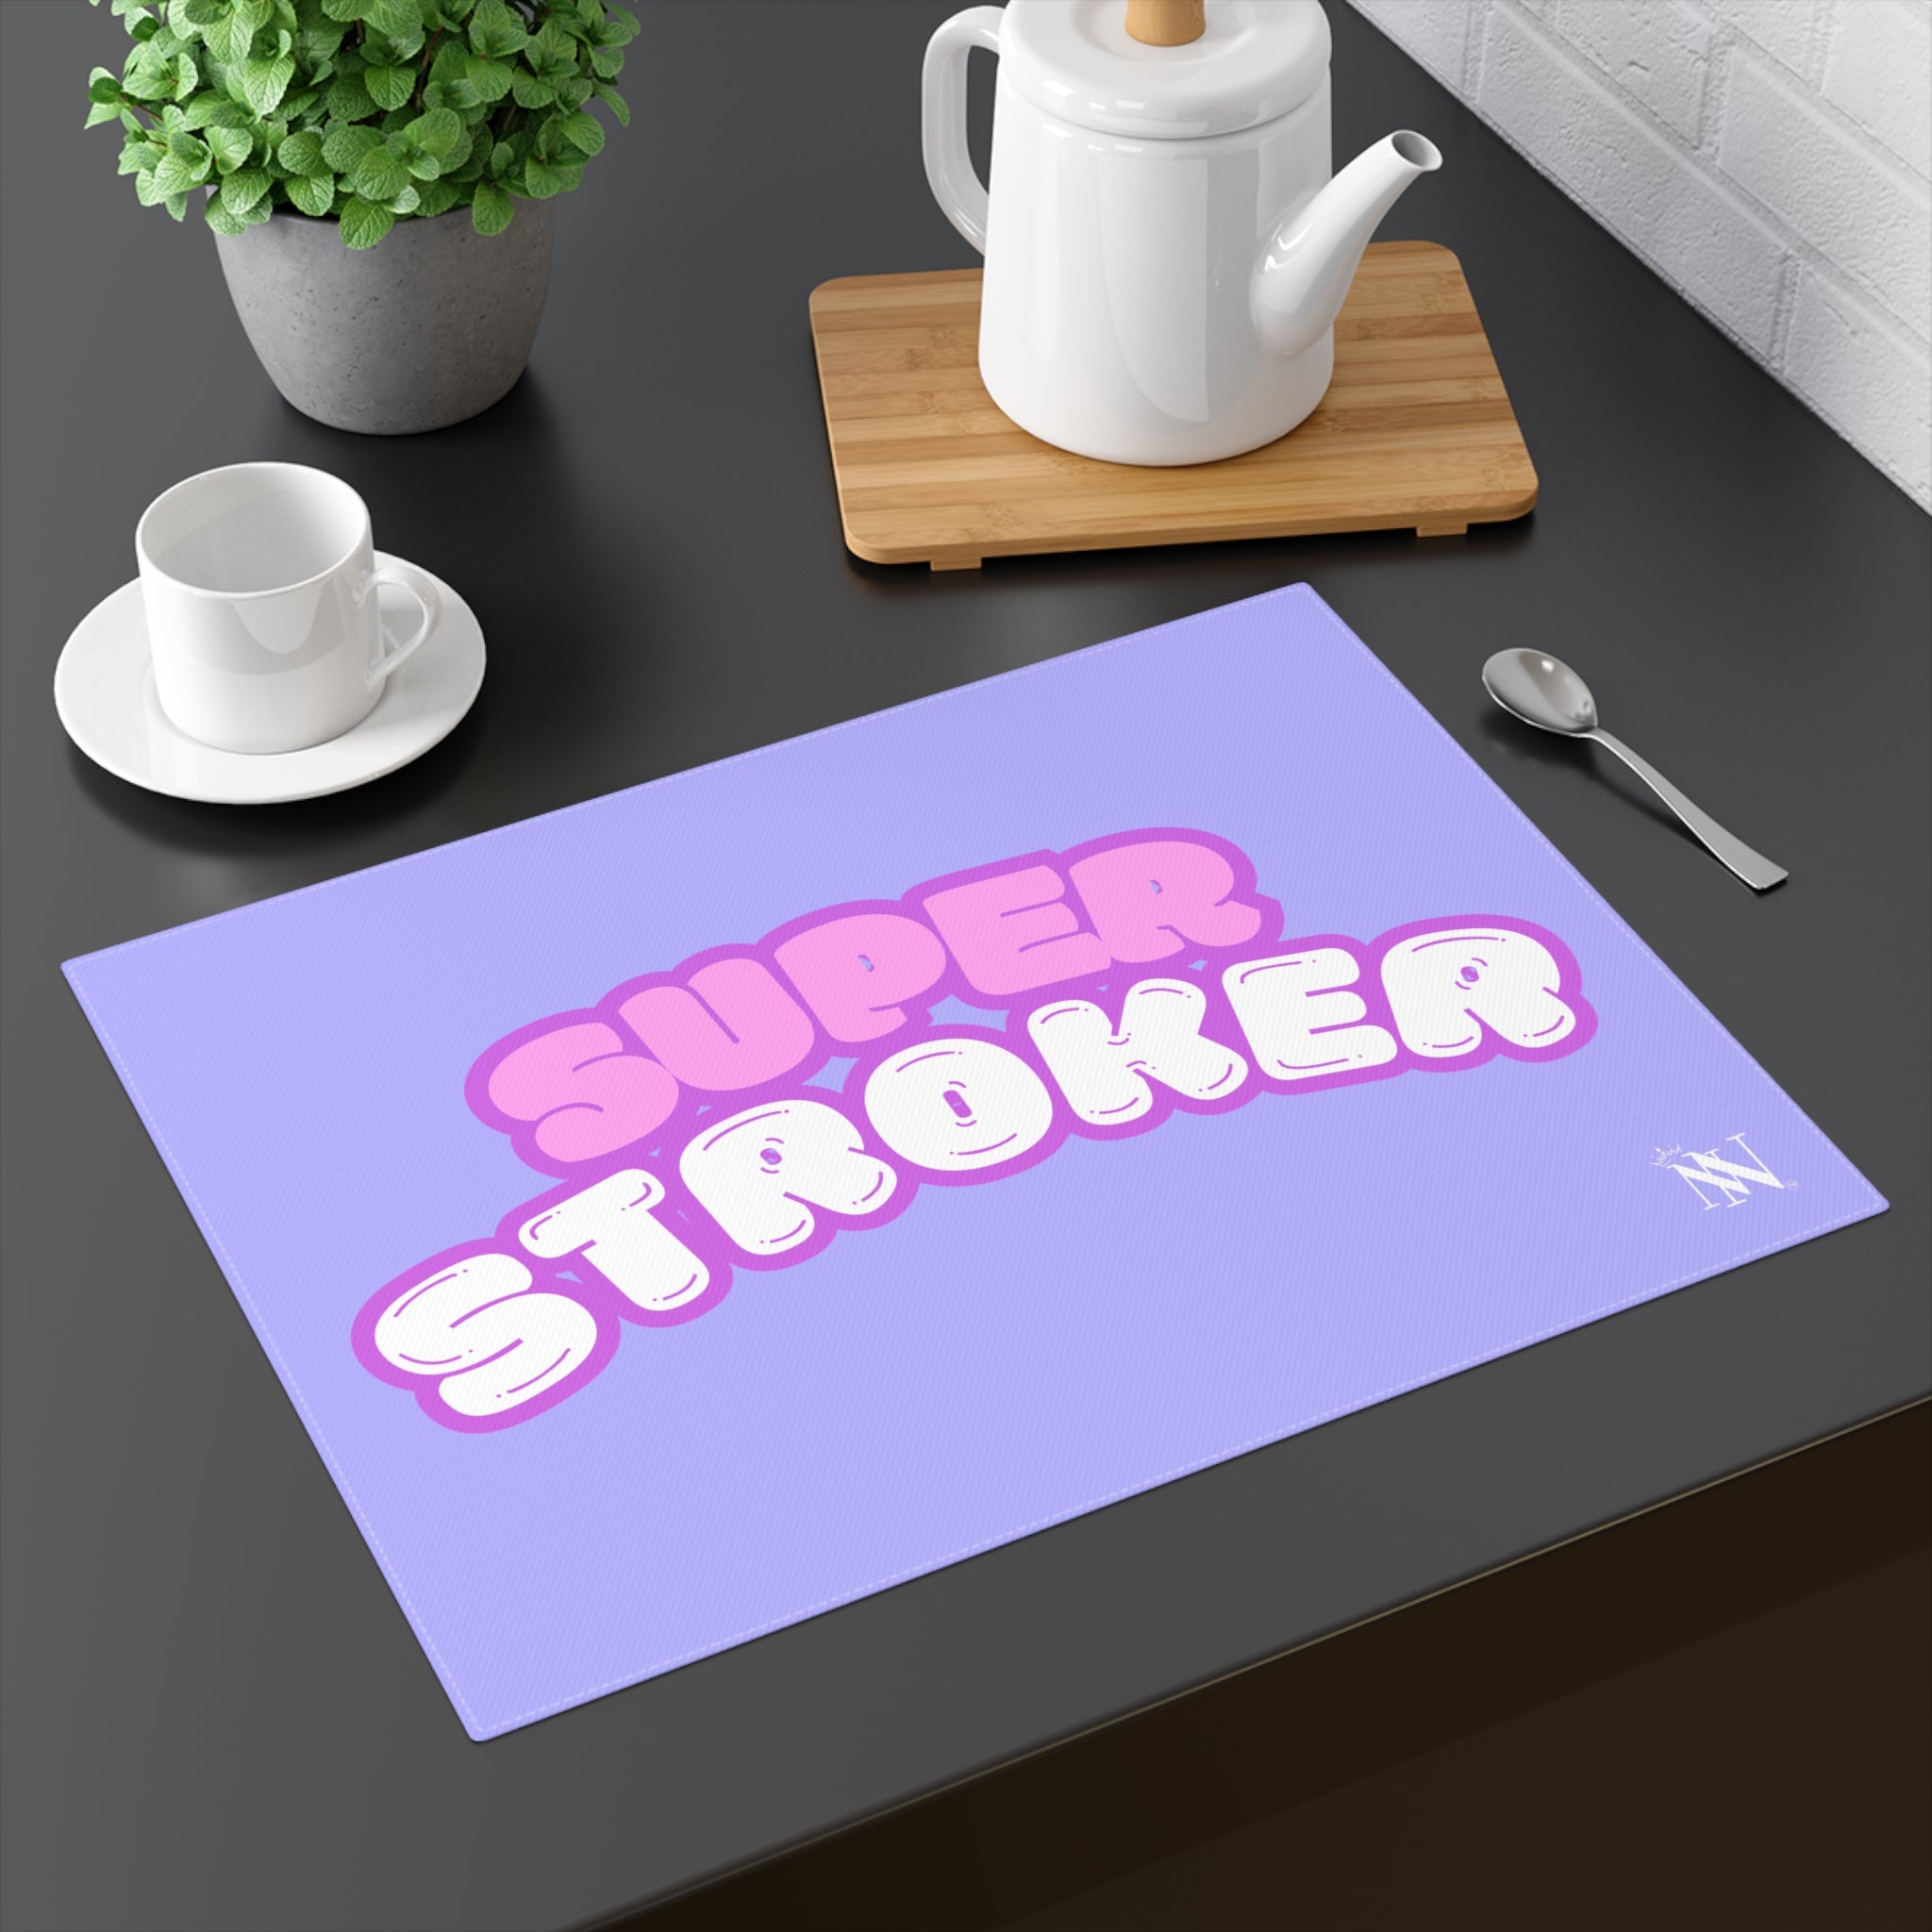 Super stroker sex toys mat